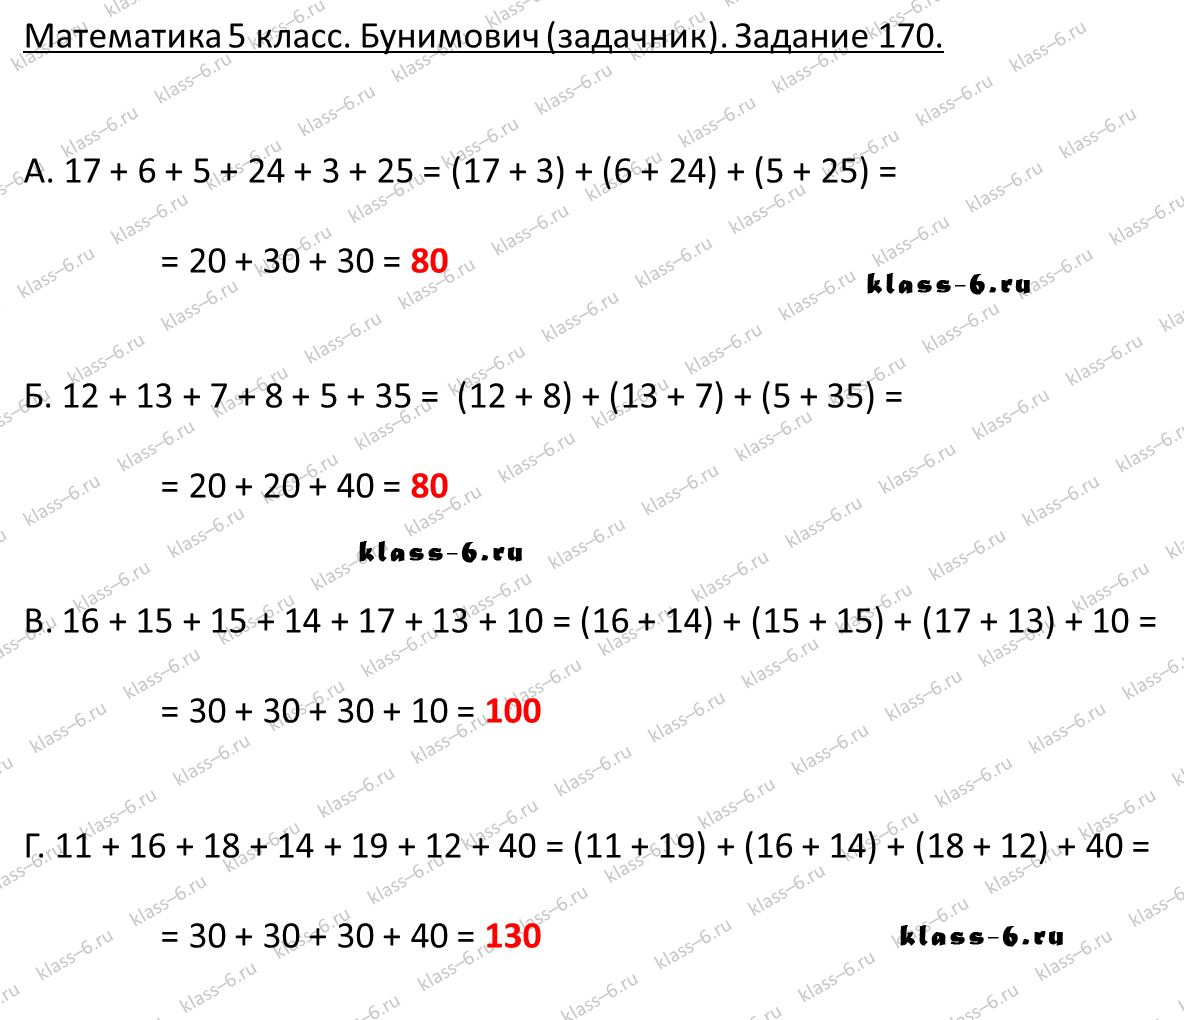 решебник и гдз по математике задачник Бунимович 5 класс задача 170